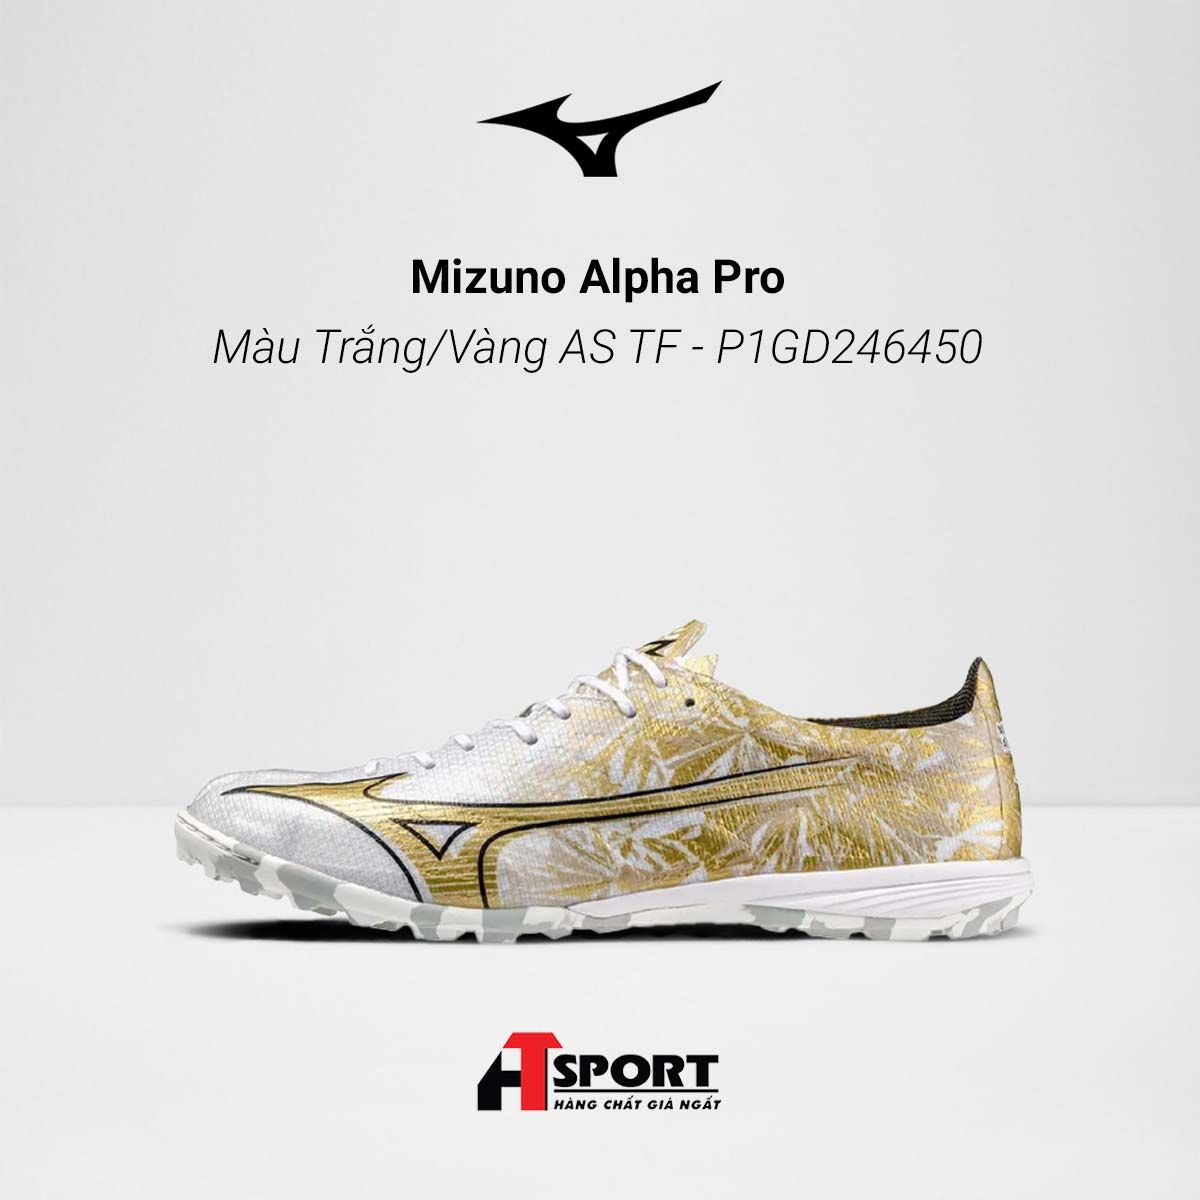  Mizuno Alpha Pro - Màu Trắng/Vàng AS TF - P1GD246450 